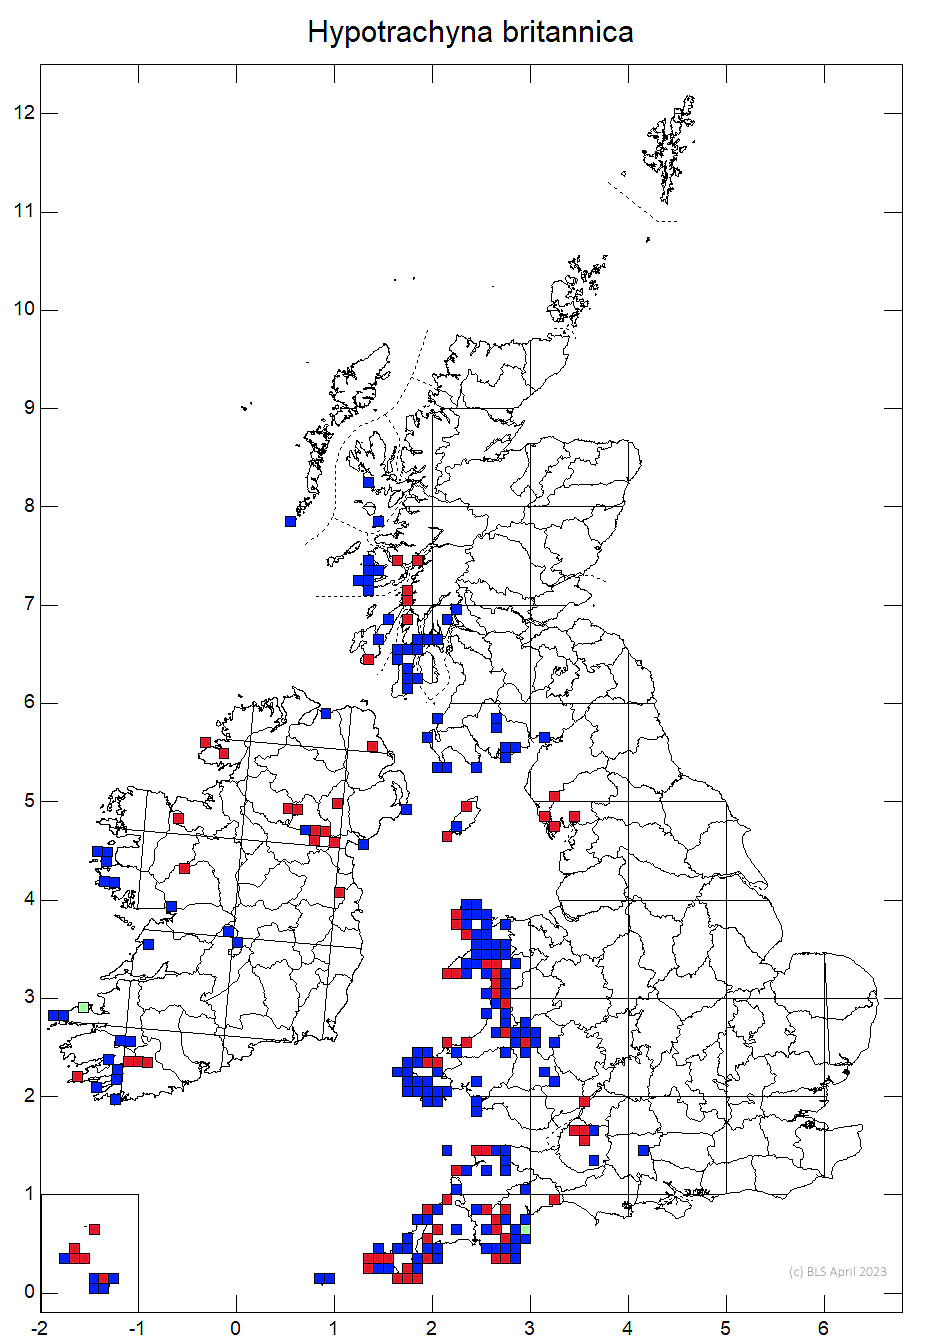 Hypotrachyna britannica 10km sq distribution map